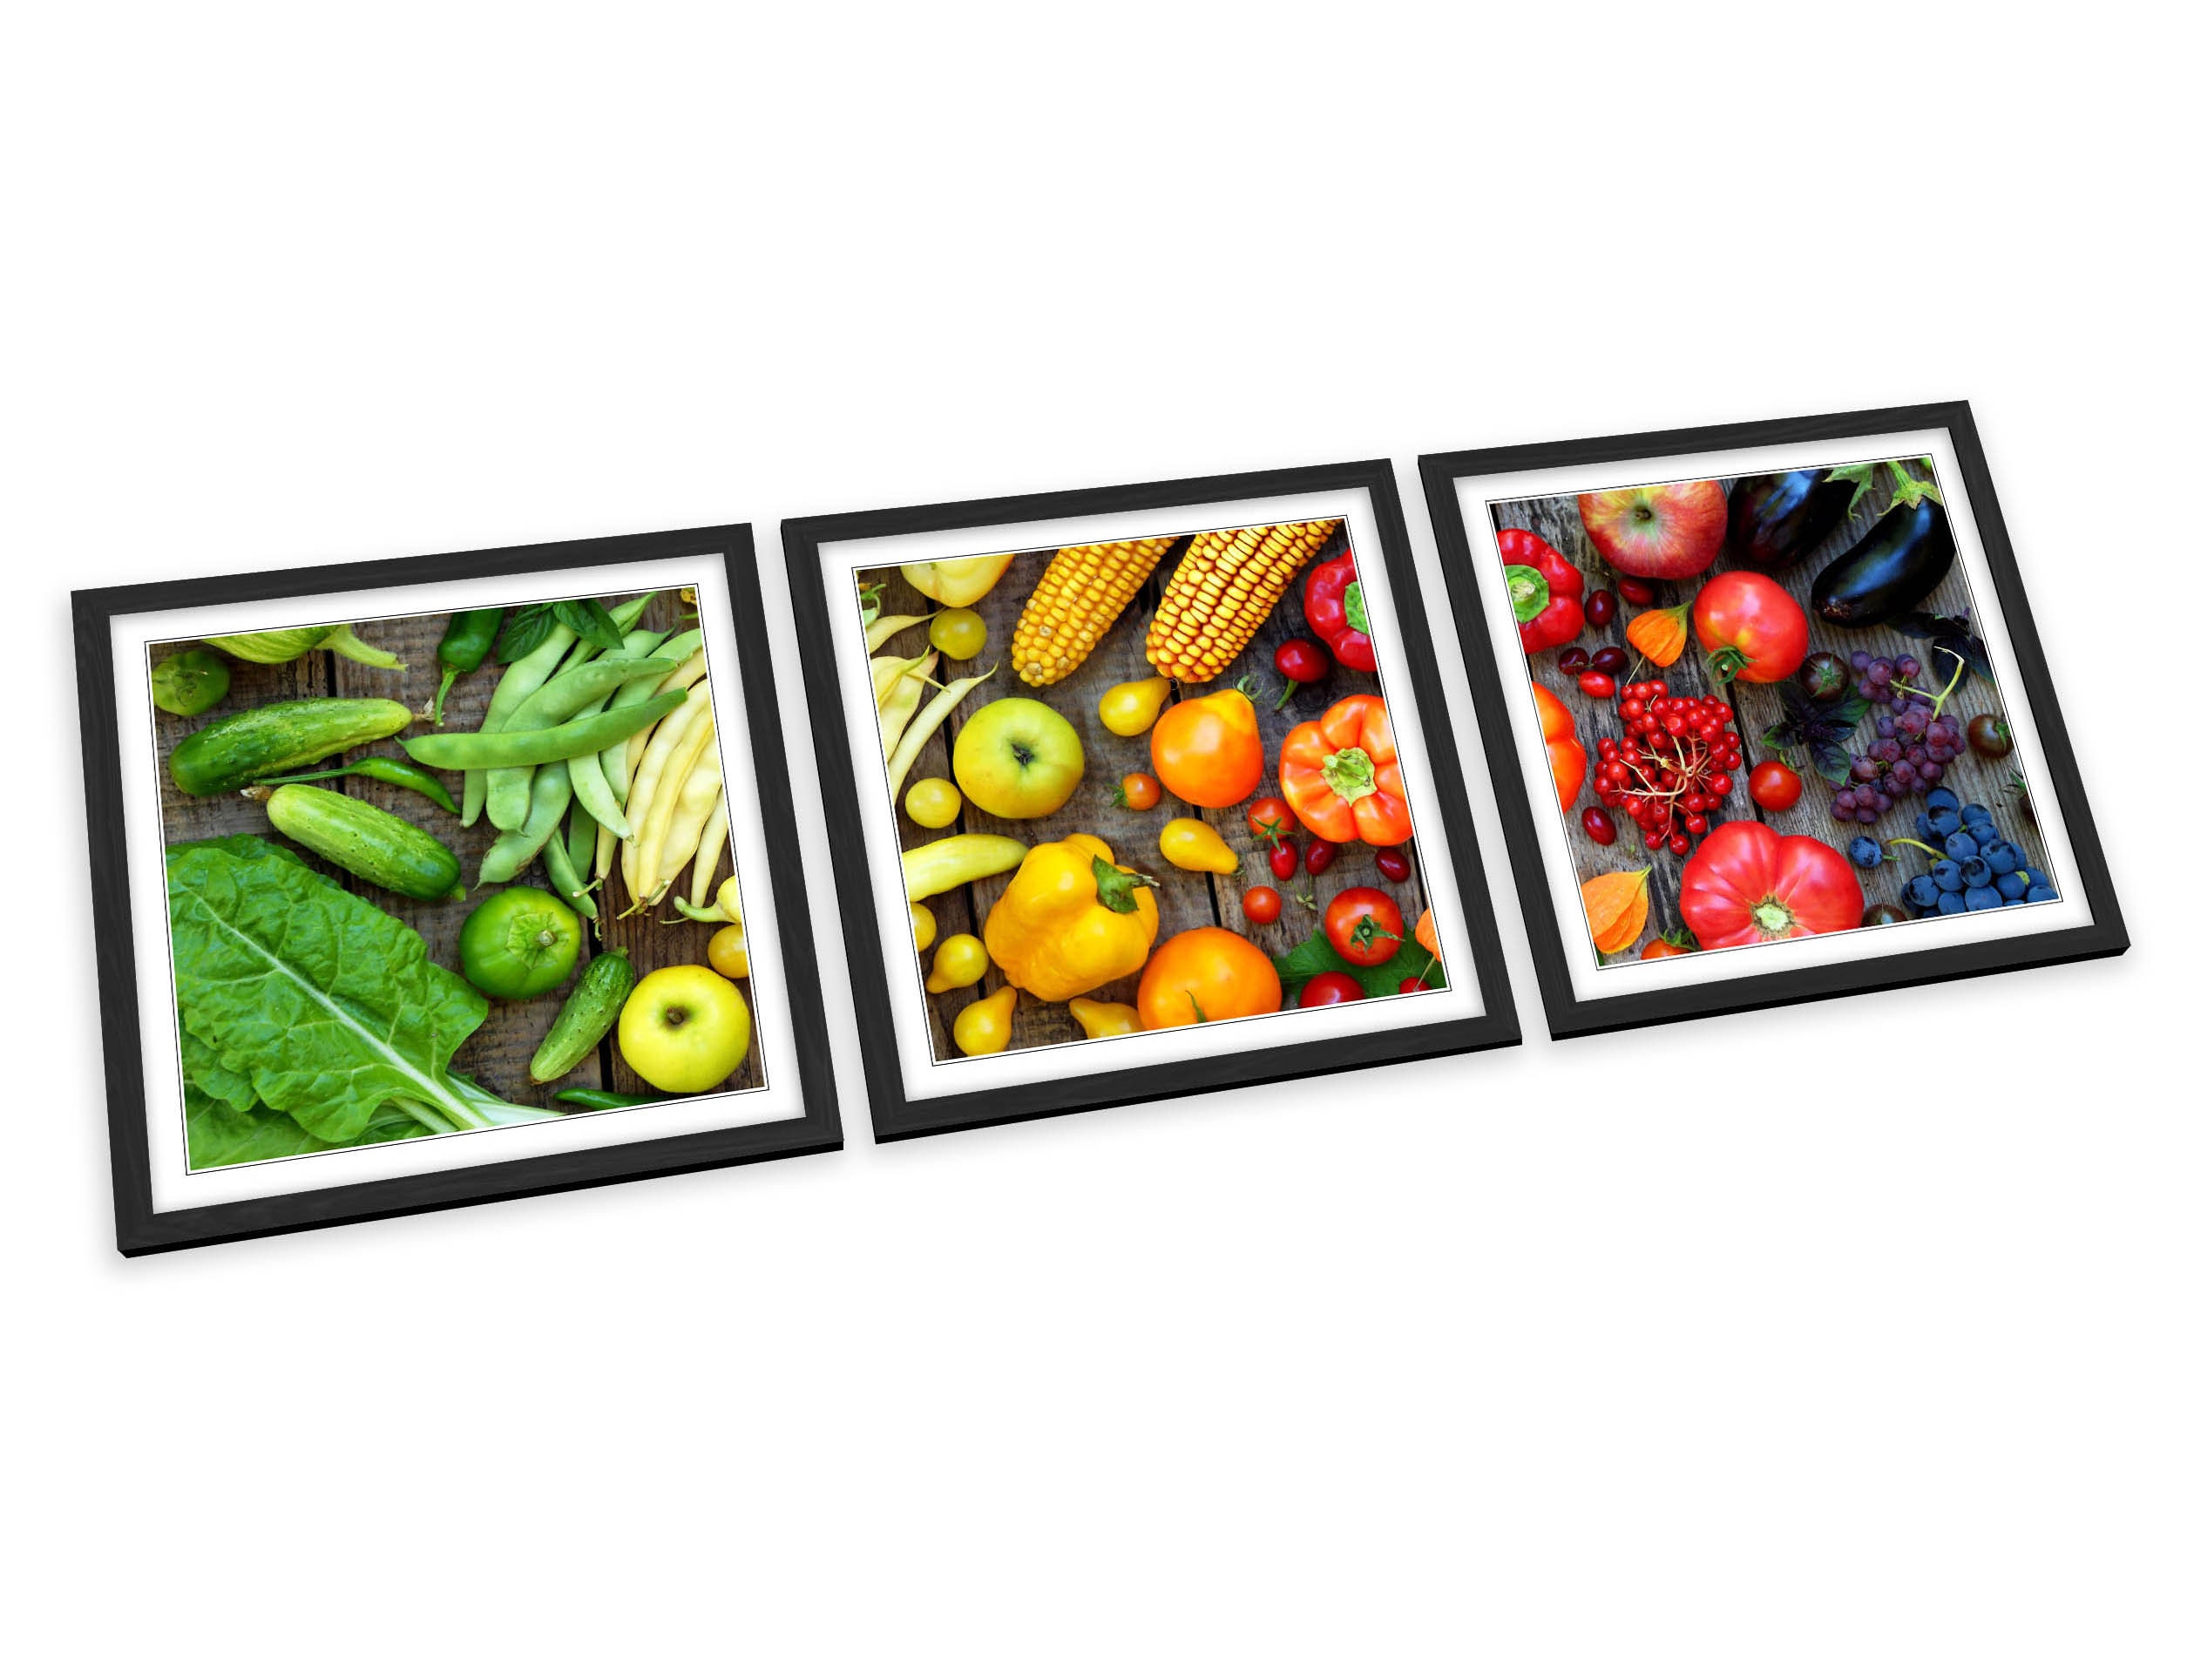 Fruit & Vegetables Kitchen FRAMED ART PRINTS Set Picture | Etsy